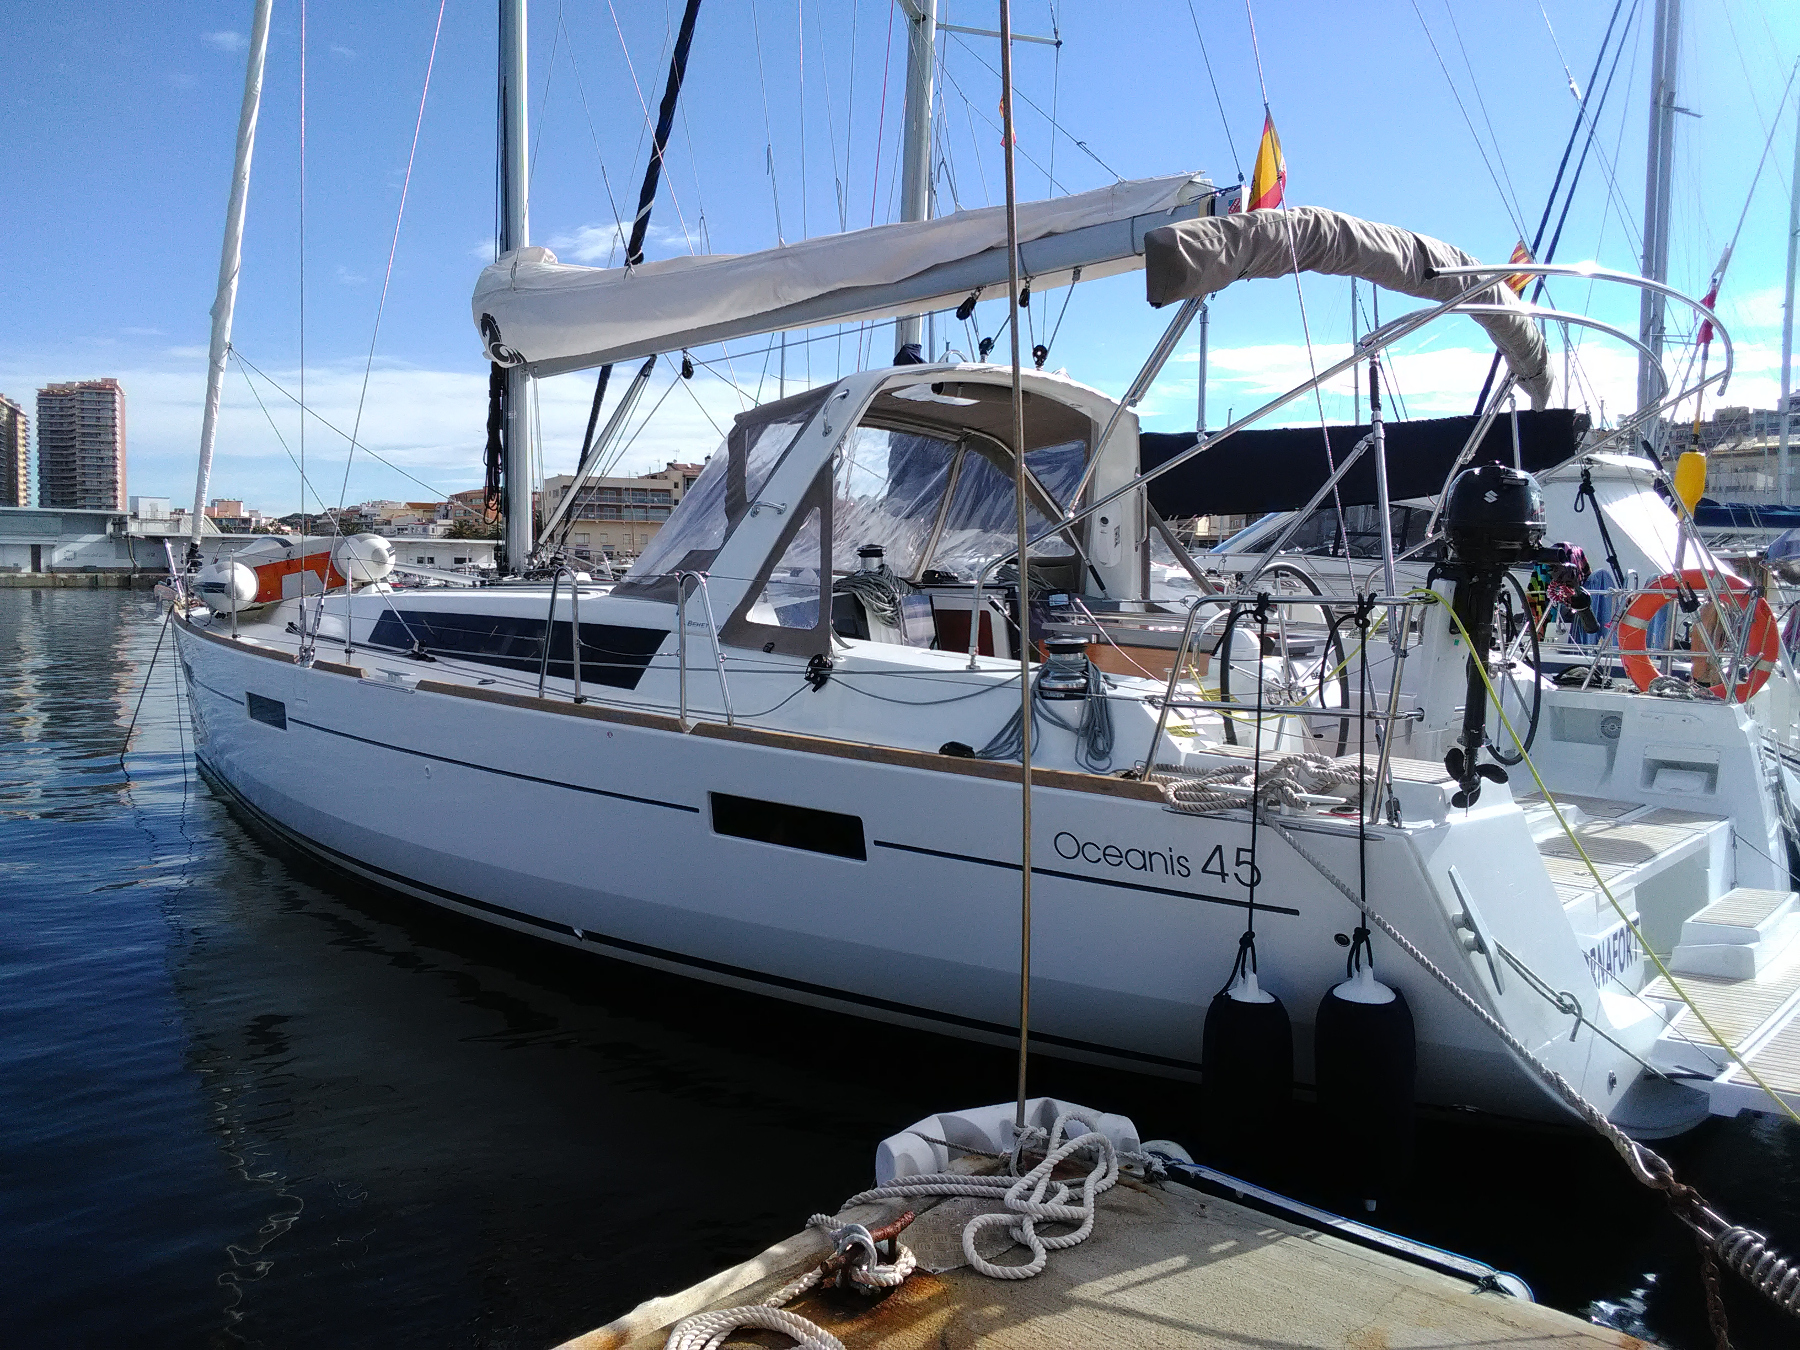 Barco de vela EN CHARTER, de la marca Beneteau modelo OCEANIS 45 y del año 2019, disponible en Port  Marina Palamós Palamós Girona España